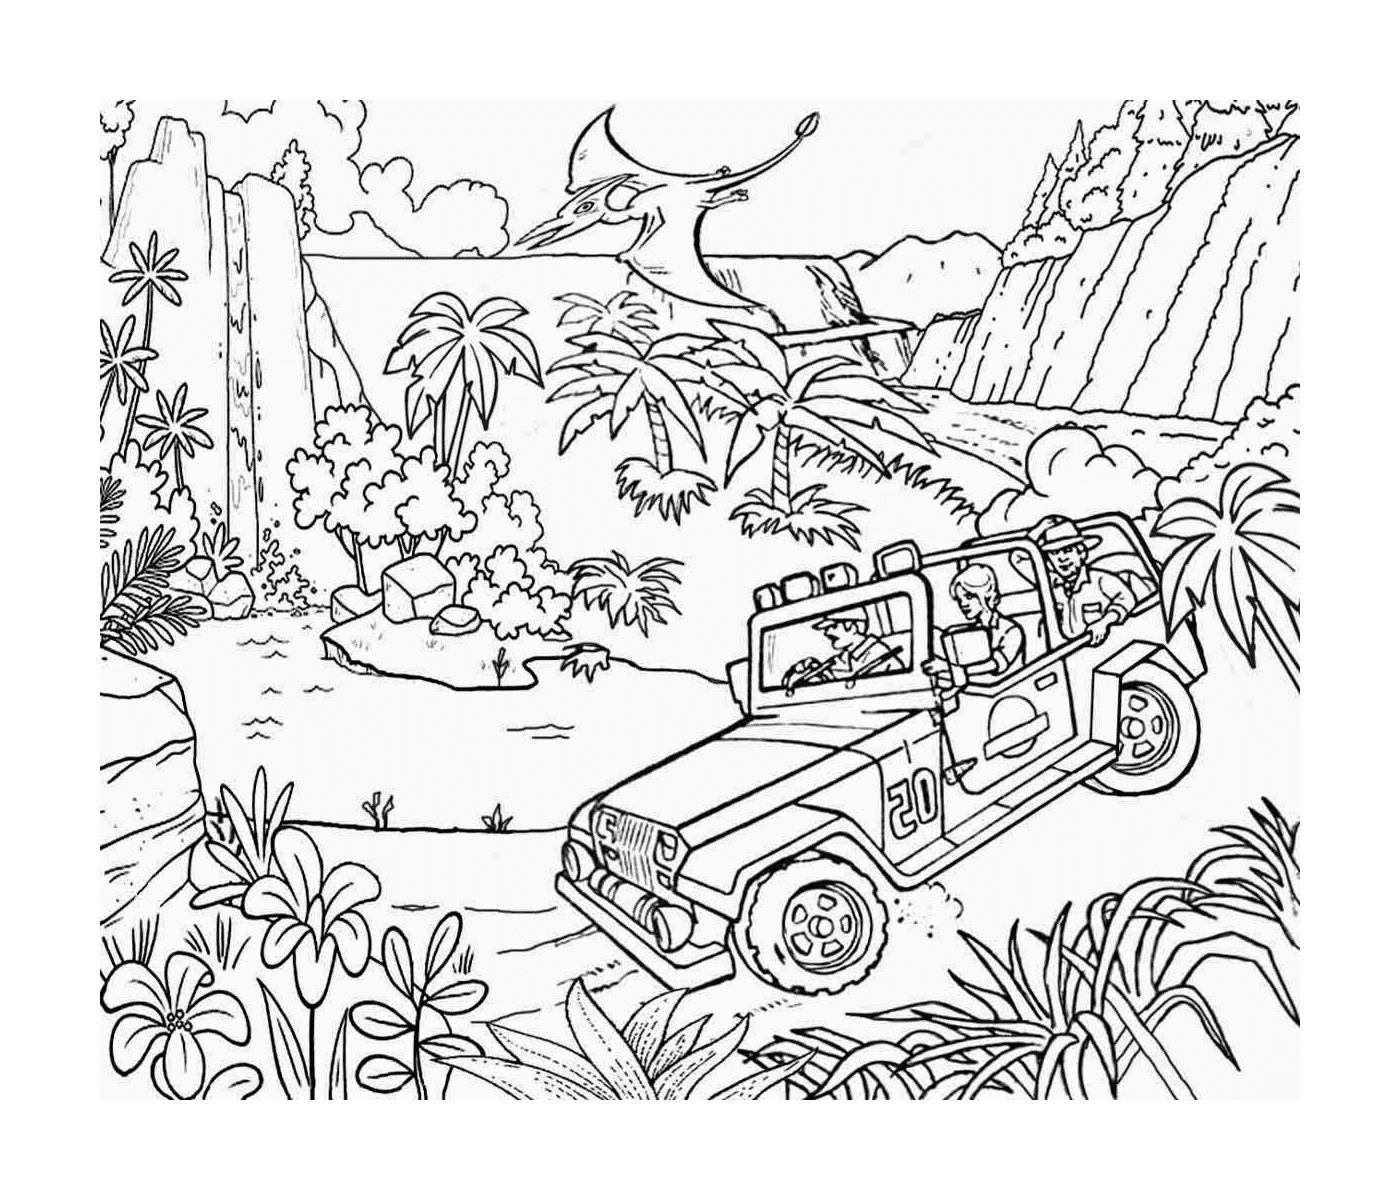  Jeep na selva de Jurassic Park, uma aventura contínua 